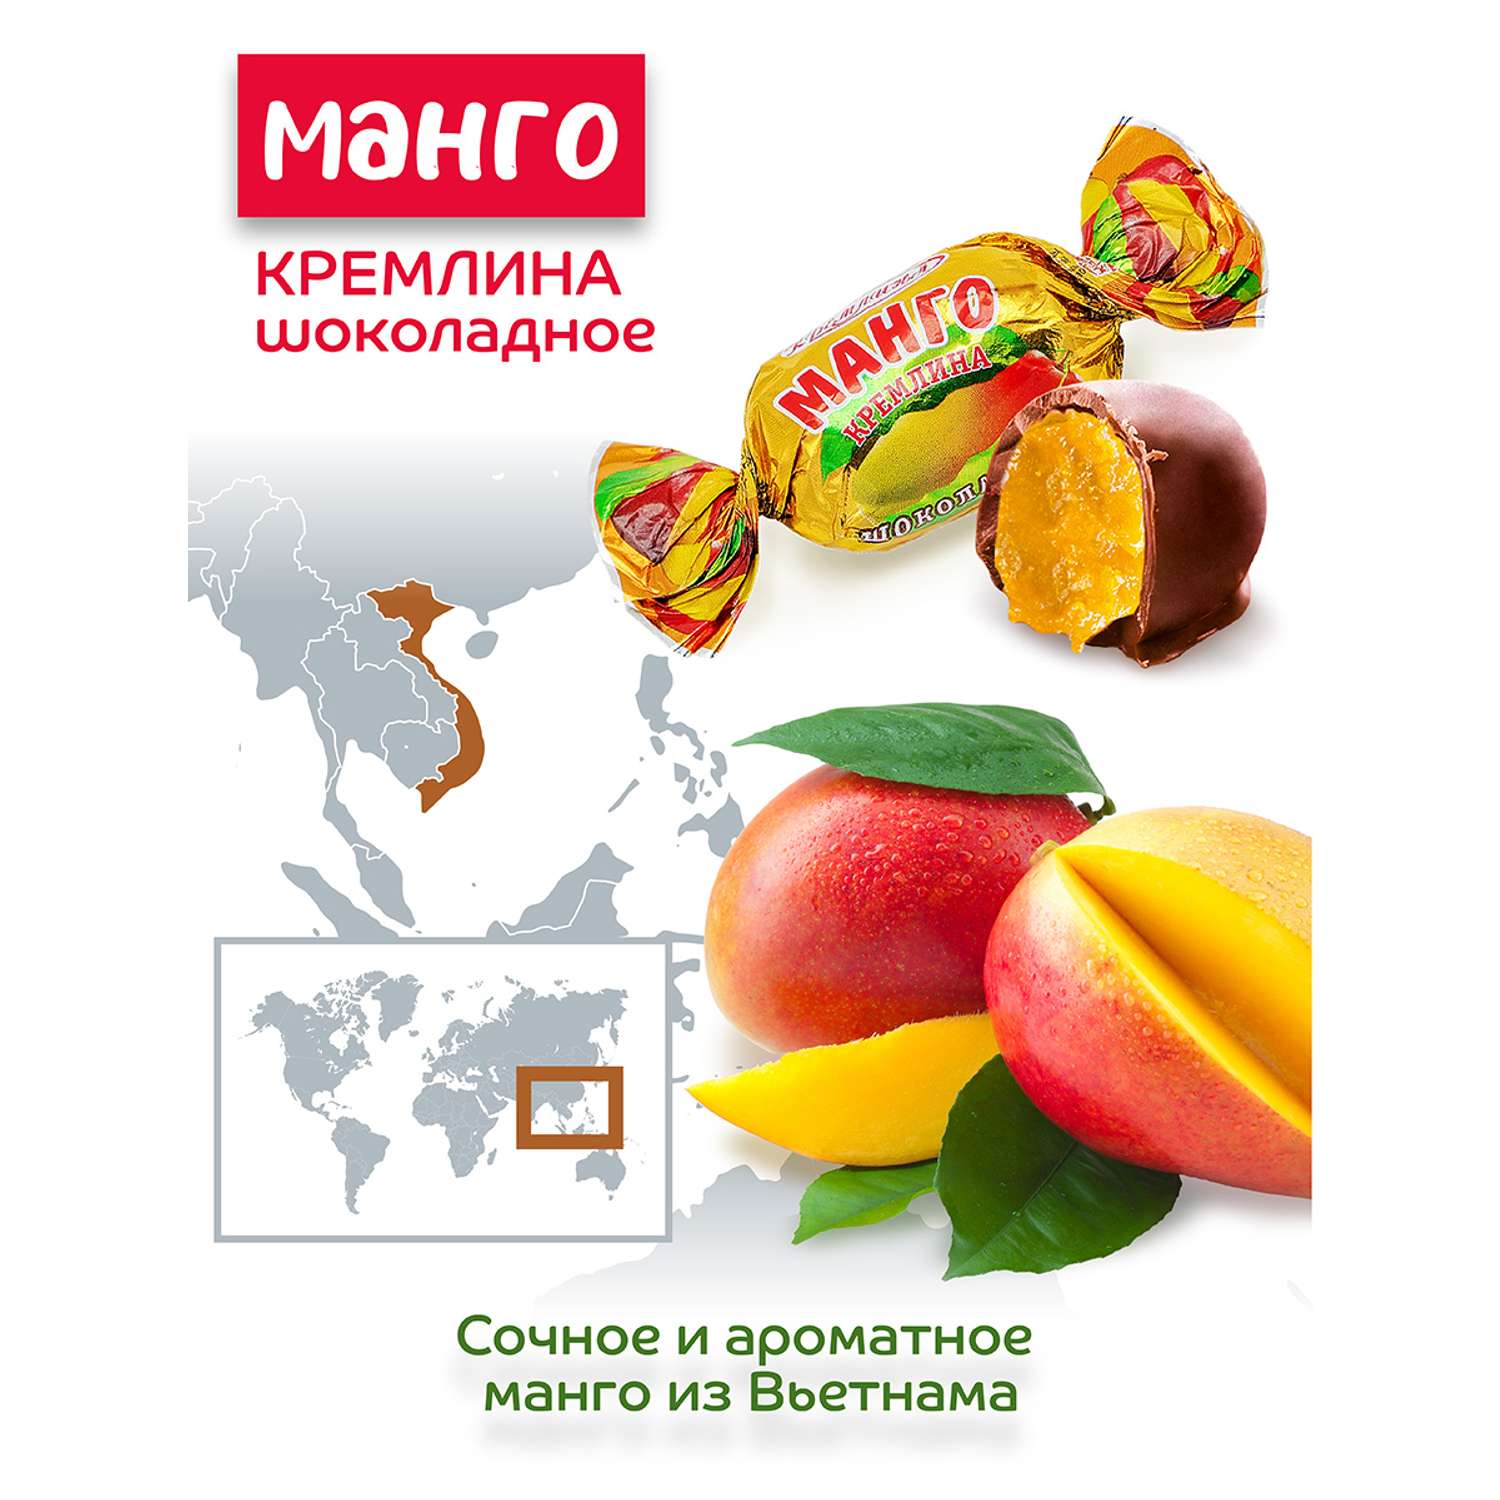 Конфеты манго в глазури Кремлина пакет 600 гр - фото 4